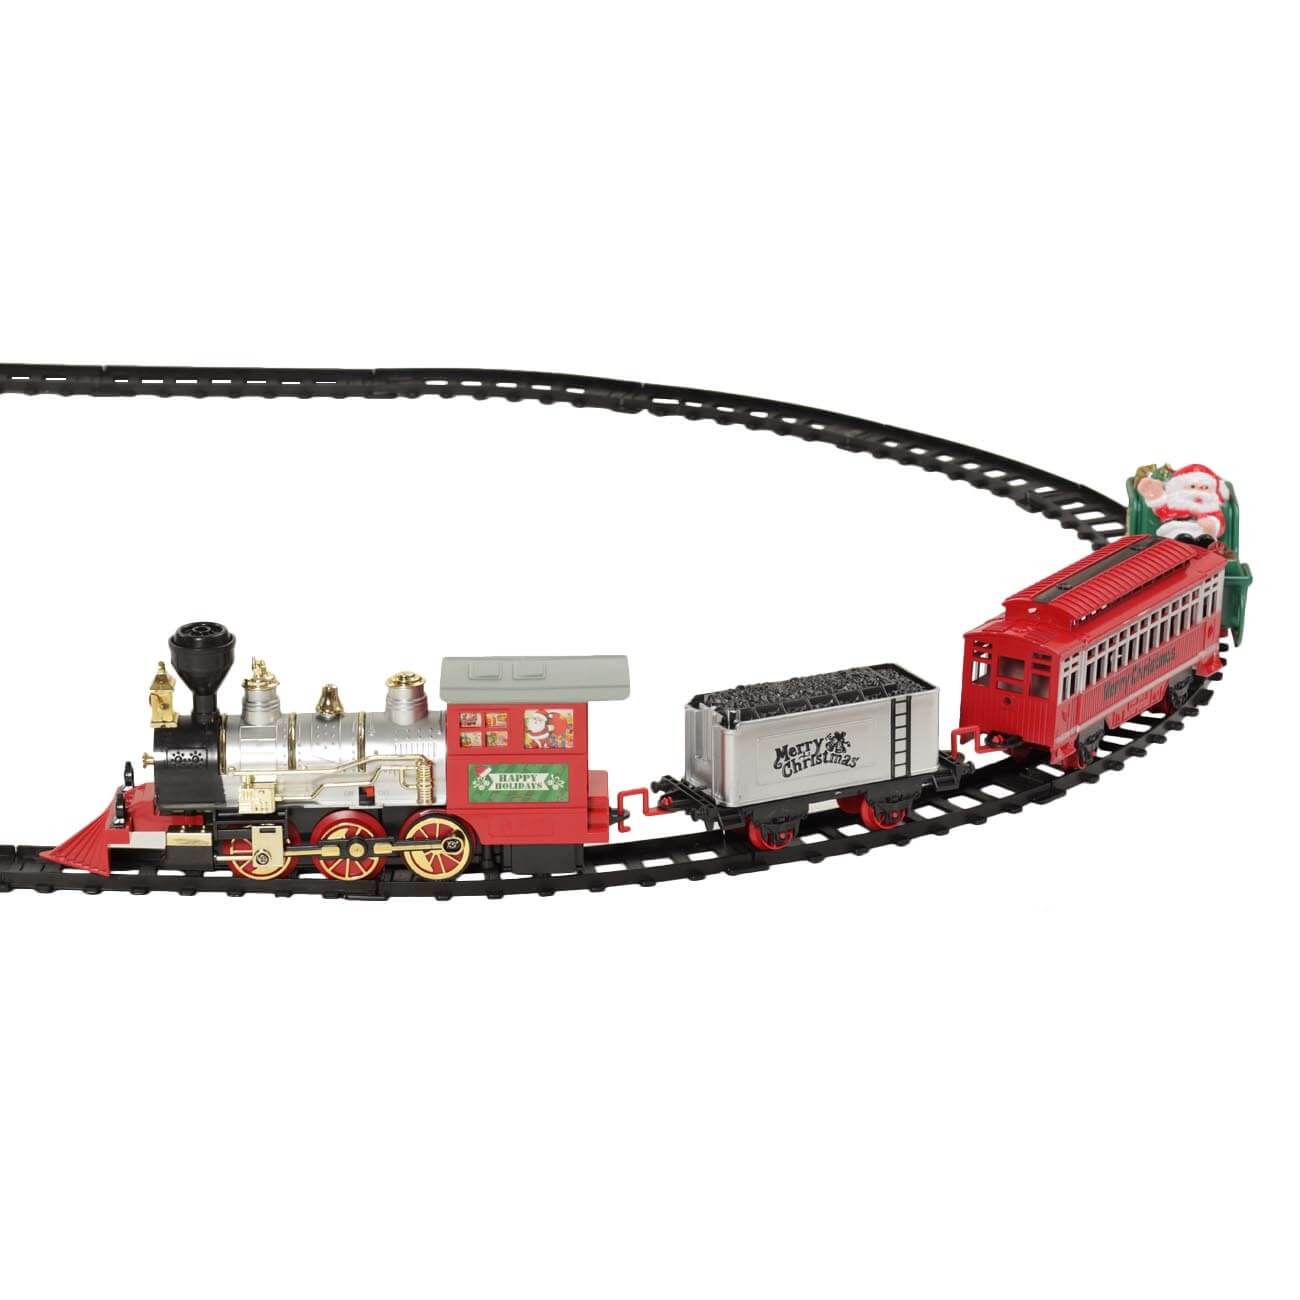 Железная дорога игрушечная, S, музыкальная, с подсветкой/дымом, пластик, Game rail железная дорога игрушечная l музыкальная с подсветкой дымом пластик game rail